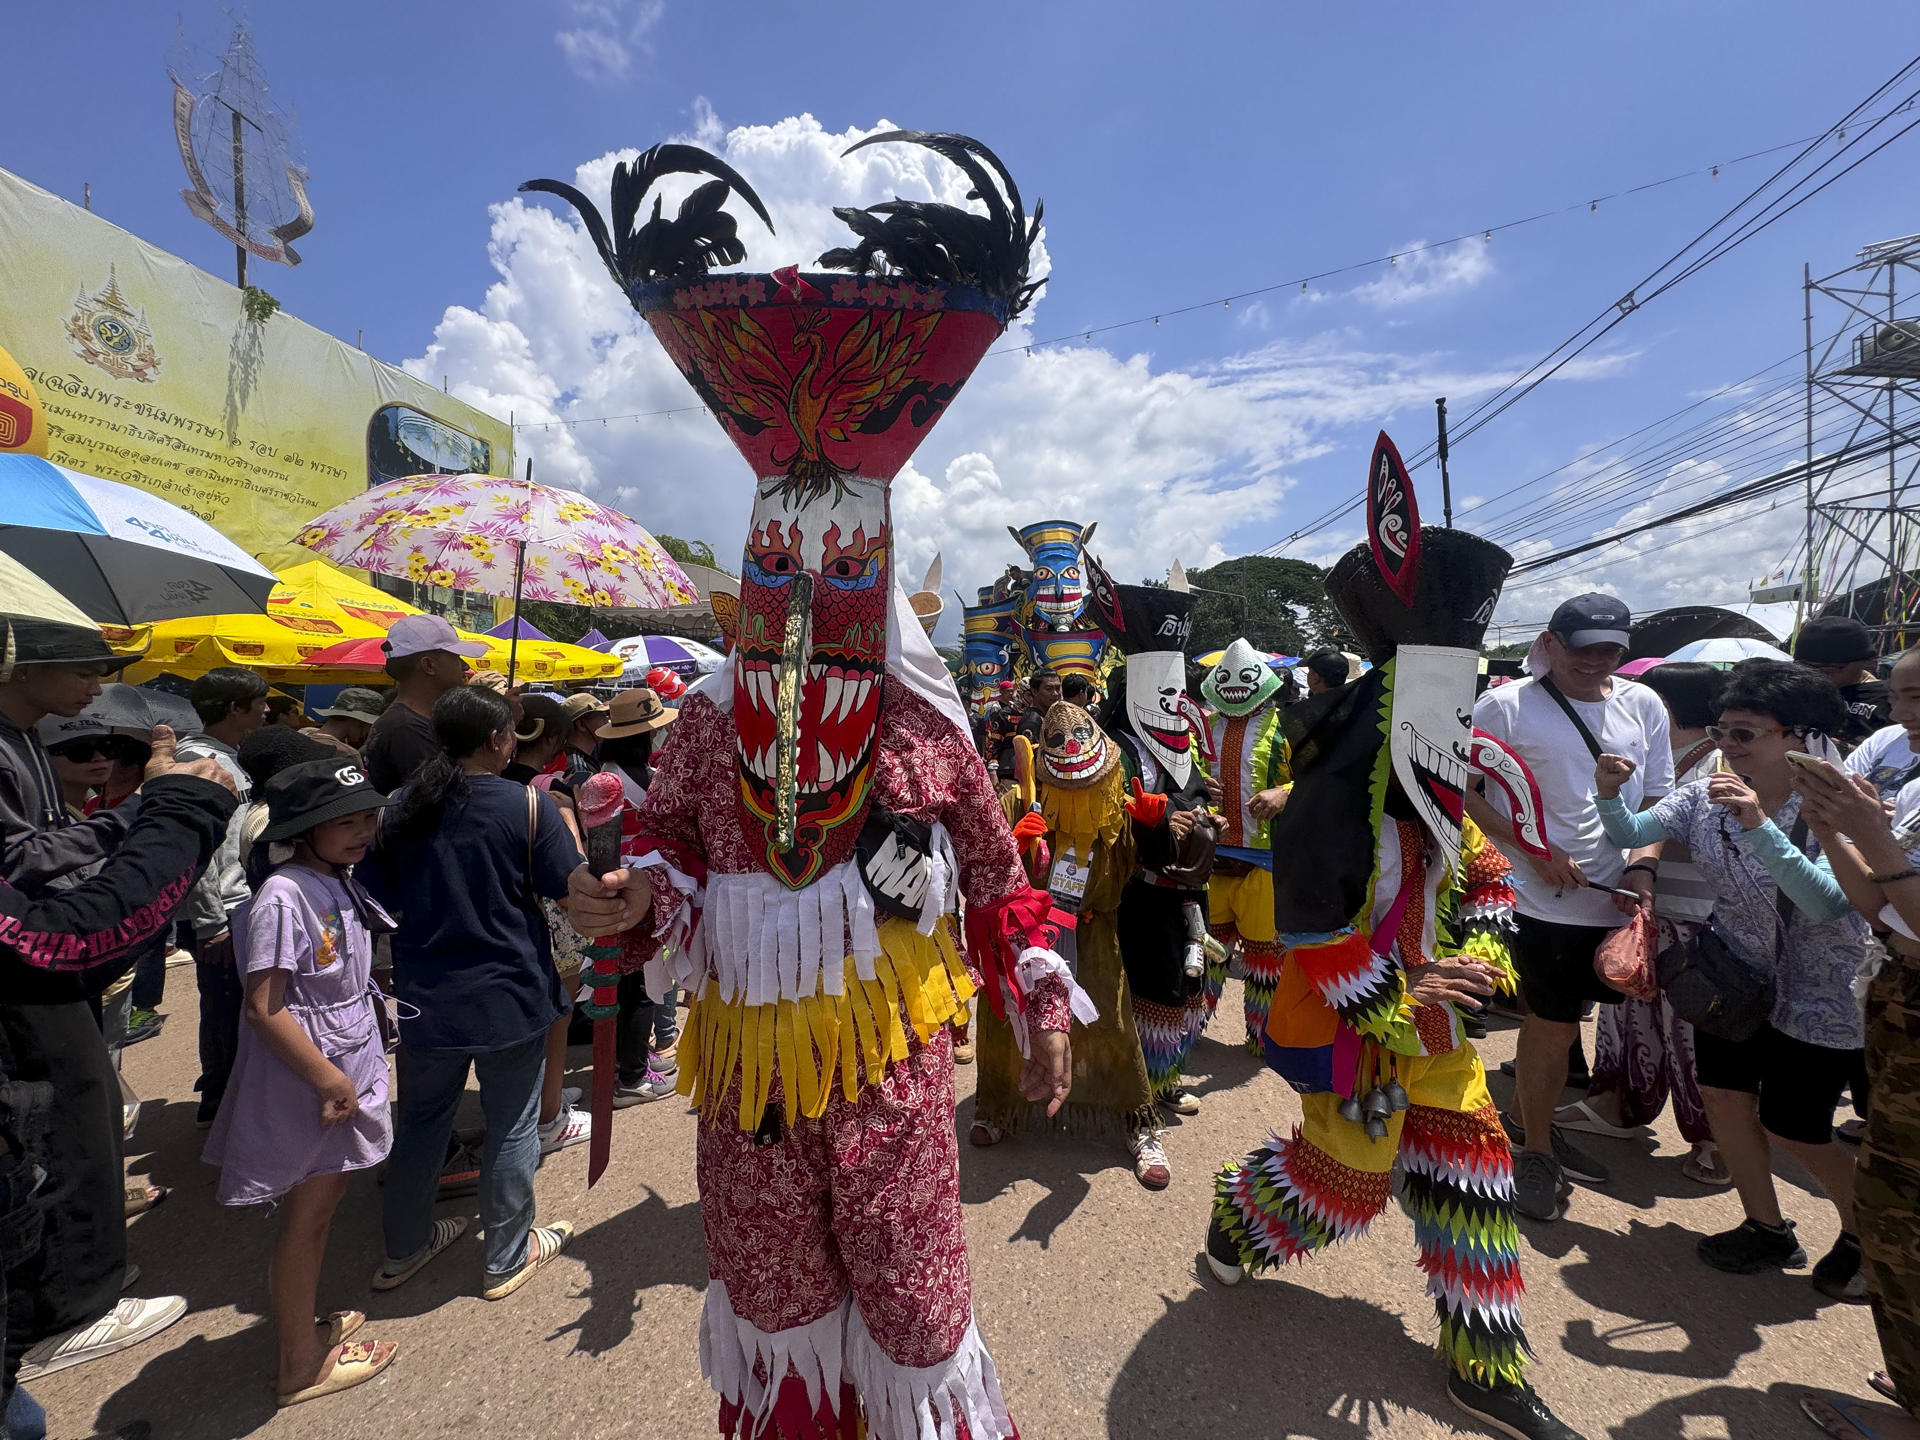 Una multitud salió este lunes a las calles con máscaras y algunas espadas fálicas para participar en el festival de los espíritus Phi Ta Khon que se celebra anualmente en un pequeño distrito rural en el noreste de Tailandia.Los participantes bailaron con sus máscaras, intrincadamente decoradas, en el distrito de Dan Sai, en la provincia de Loei, donde este peculiar festival refleja el eclecticismo del budismo tailandés mezclado con creencias animistas.La tailandesa Wasinee Chompithong, una estudiante de 16 años, explicó a EFE que las máscaras representan a los fantasmas y que el festival, Phi Ta Khon, significa "los fantasmas siguen a las personas" y es una tradición seguida por muchas generaciones. EFE/ Jackree Bunyamethi.